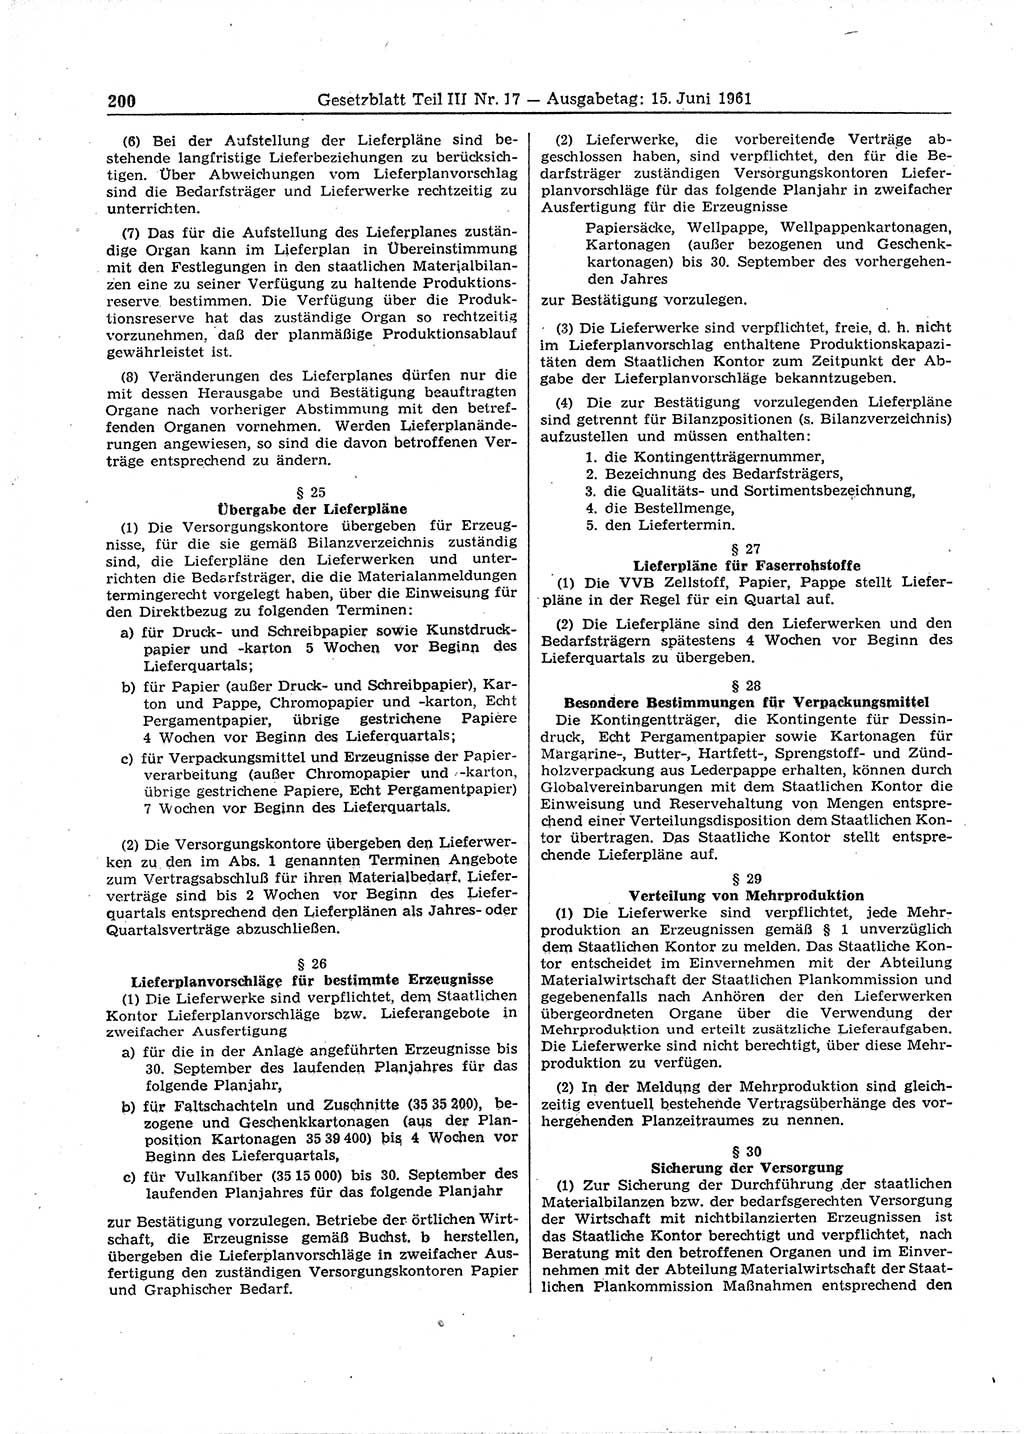 Gesetzblatt (GBl.) der Deutschen Demokratischen Republik (DDR) Teil ⅠⅠⅠ 1961, Seite 200 (GBl. DDR ⅠⅠⅠ 1961, S. 200)